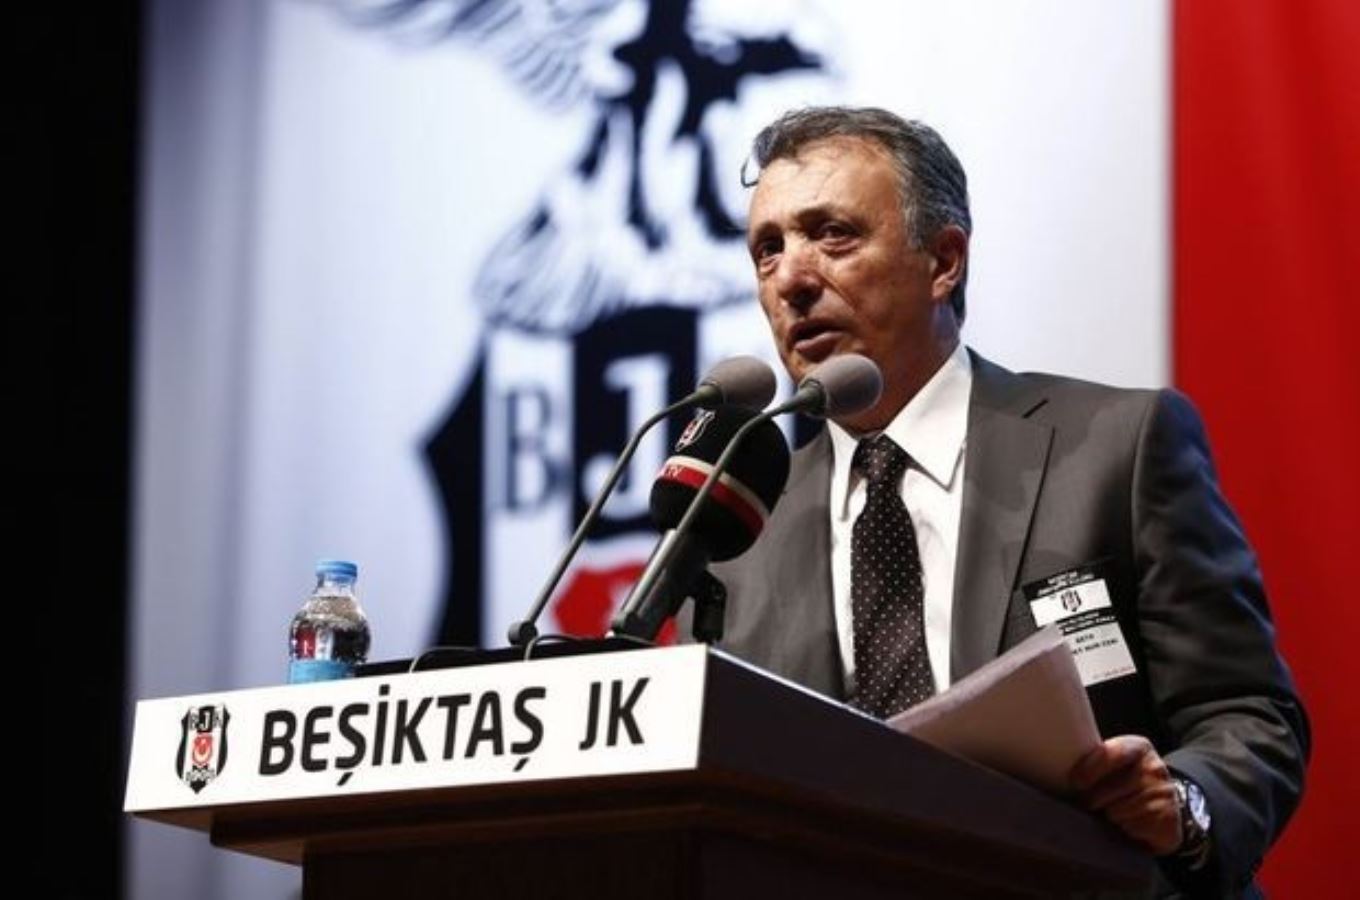 Yıldırım Demirören, Beşiktaş'tan 92 milyon liralık alacağından vazgeçti